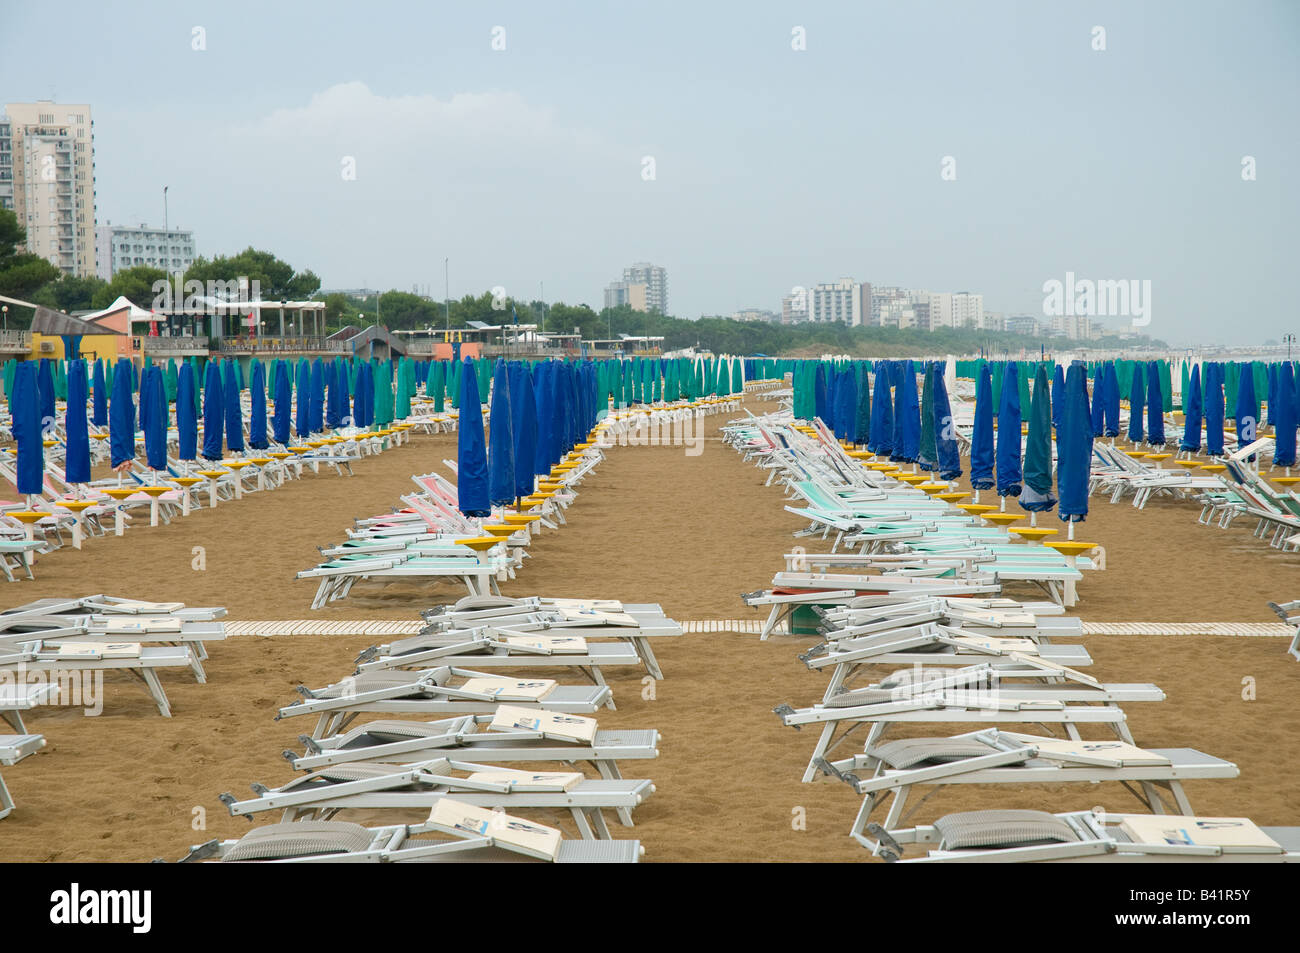 Las tumbonas y sombrillas cerradas en la playa de Lignano Sabbiadoro, Italia Foto de stock